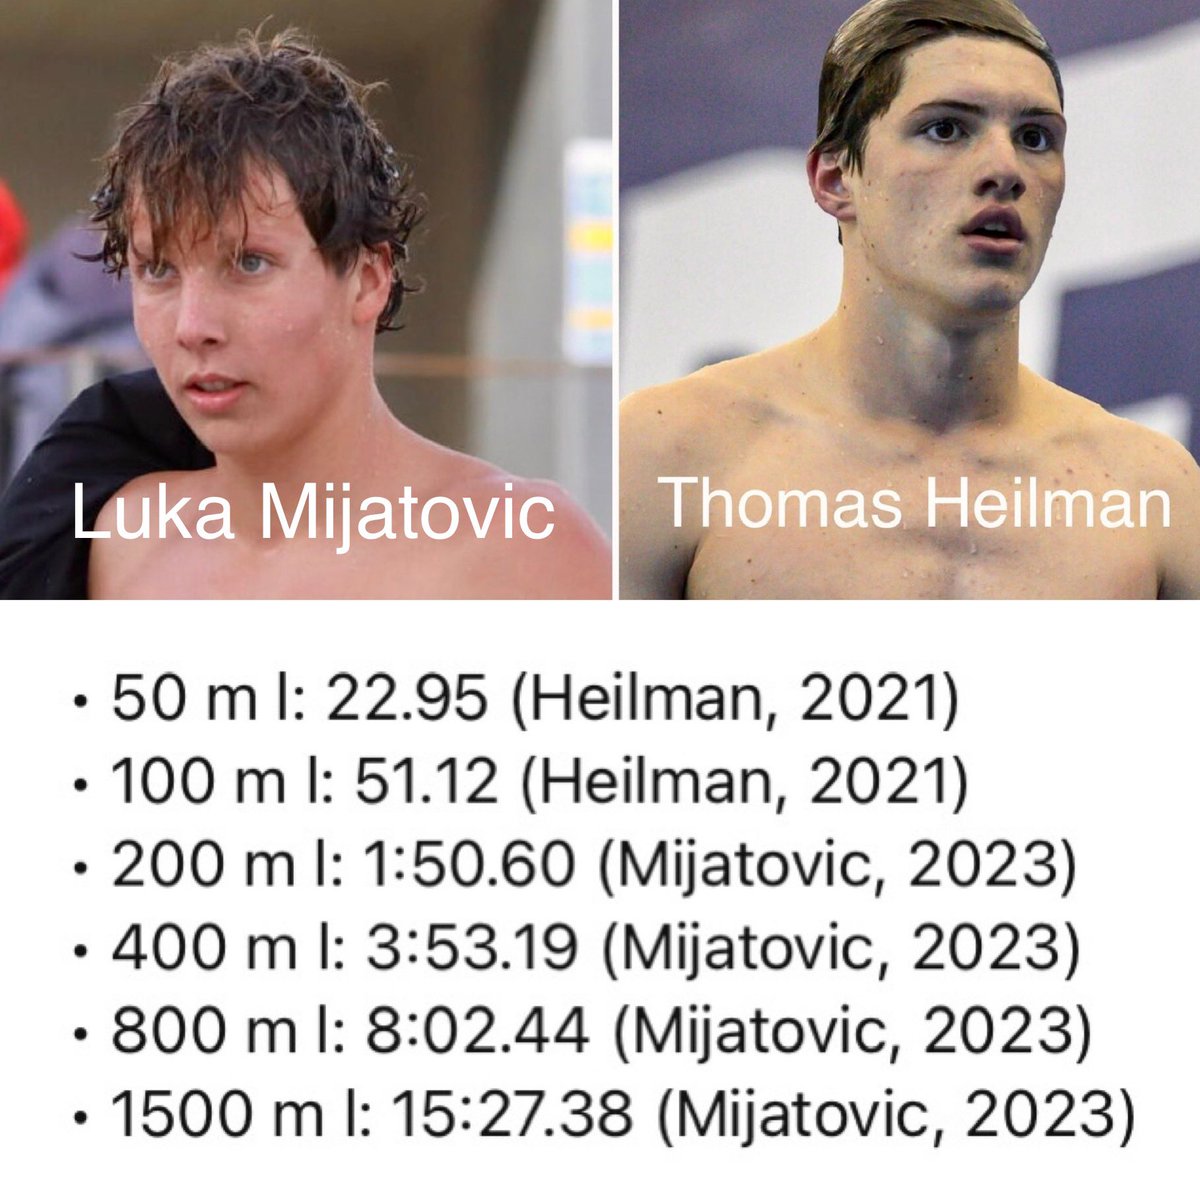 “🏊‍♂️ Impresionantes récords en natación estilo libre para jóvenes talentos Luka Mijatovic y Thomas Heilman en los últimos dos años. ¡Felicidades a estos campeones! 🏆🎉 #Natación #Récords #JóvenesTalentos”